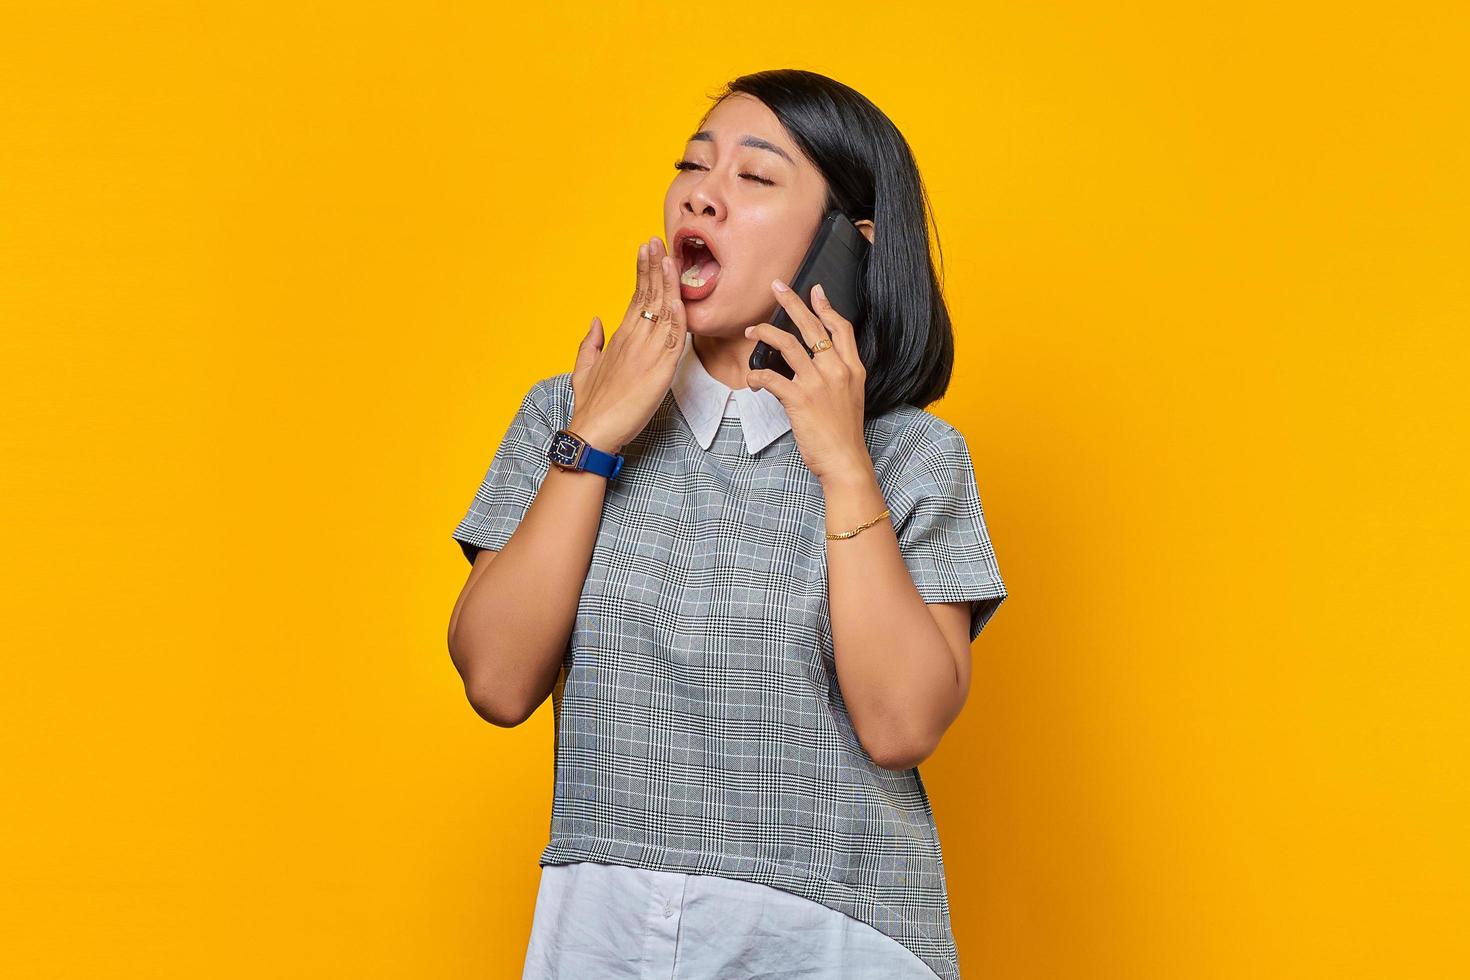 jonge aziatische vrouw geeuwt moe haar mond met de hand te bedekken terwijl ze een inkomende oproep ontvangt op een smartphone op een gele achtergrond foto